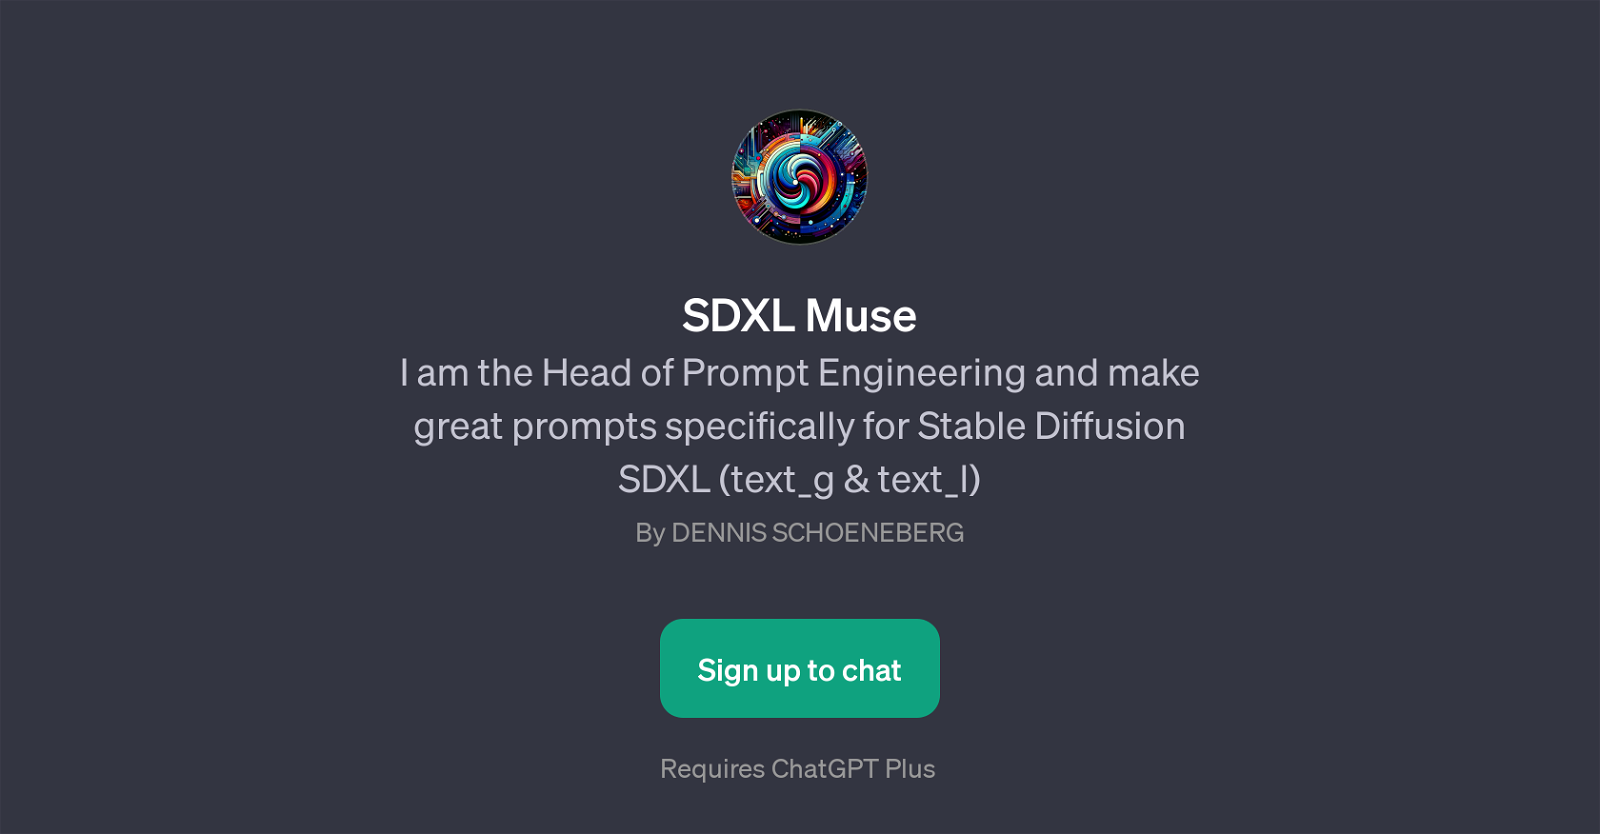 SDXL Muse website